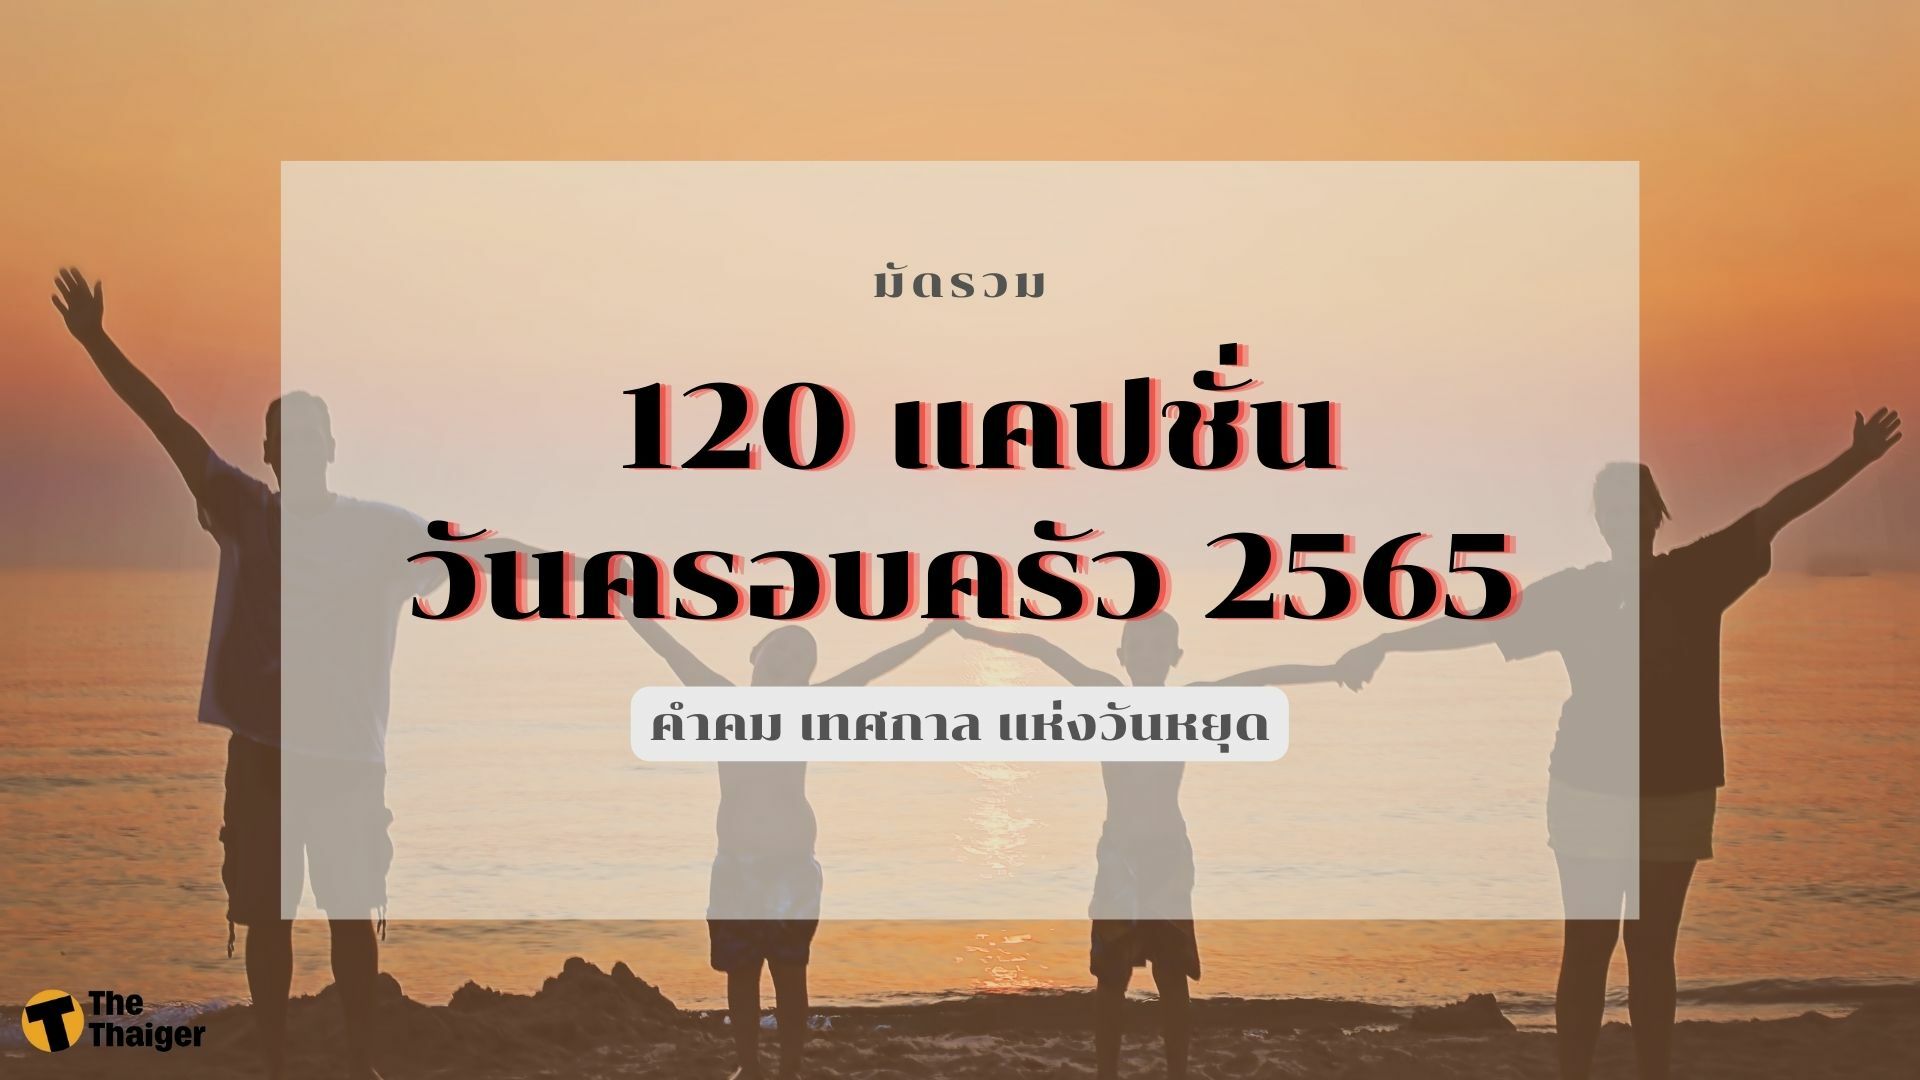 มัดรวม 120 แคปชั่นวันครอบครัว 2565 คำคม เทศกาล แห่งวันหยุด | Thaiger ข่าวไทย